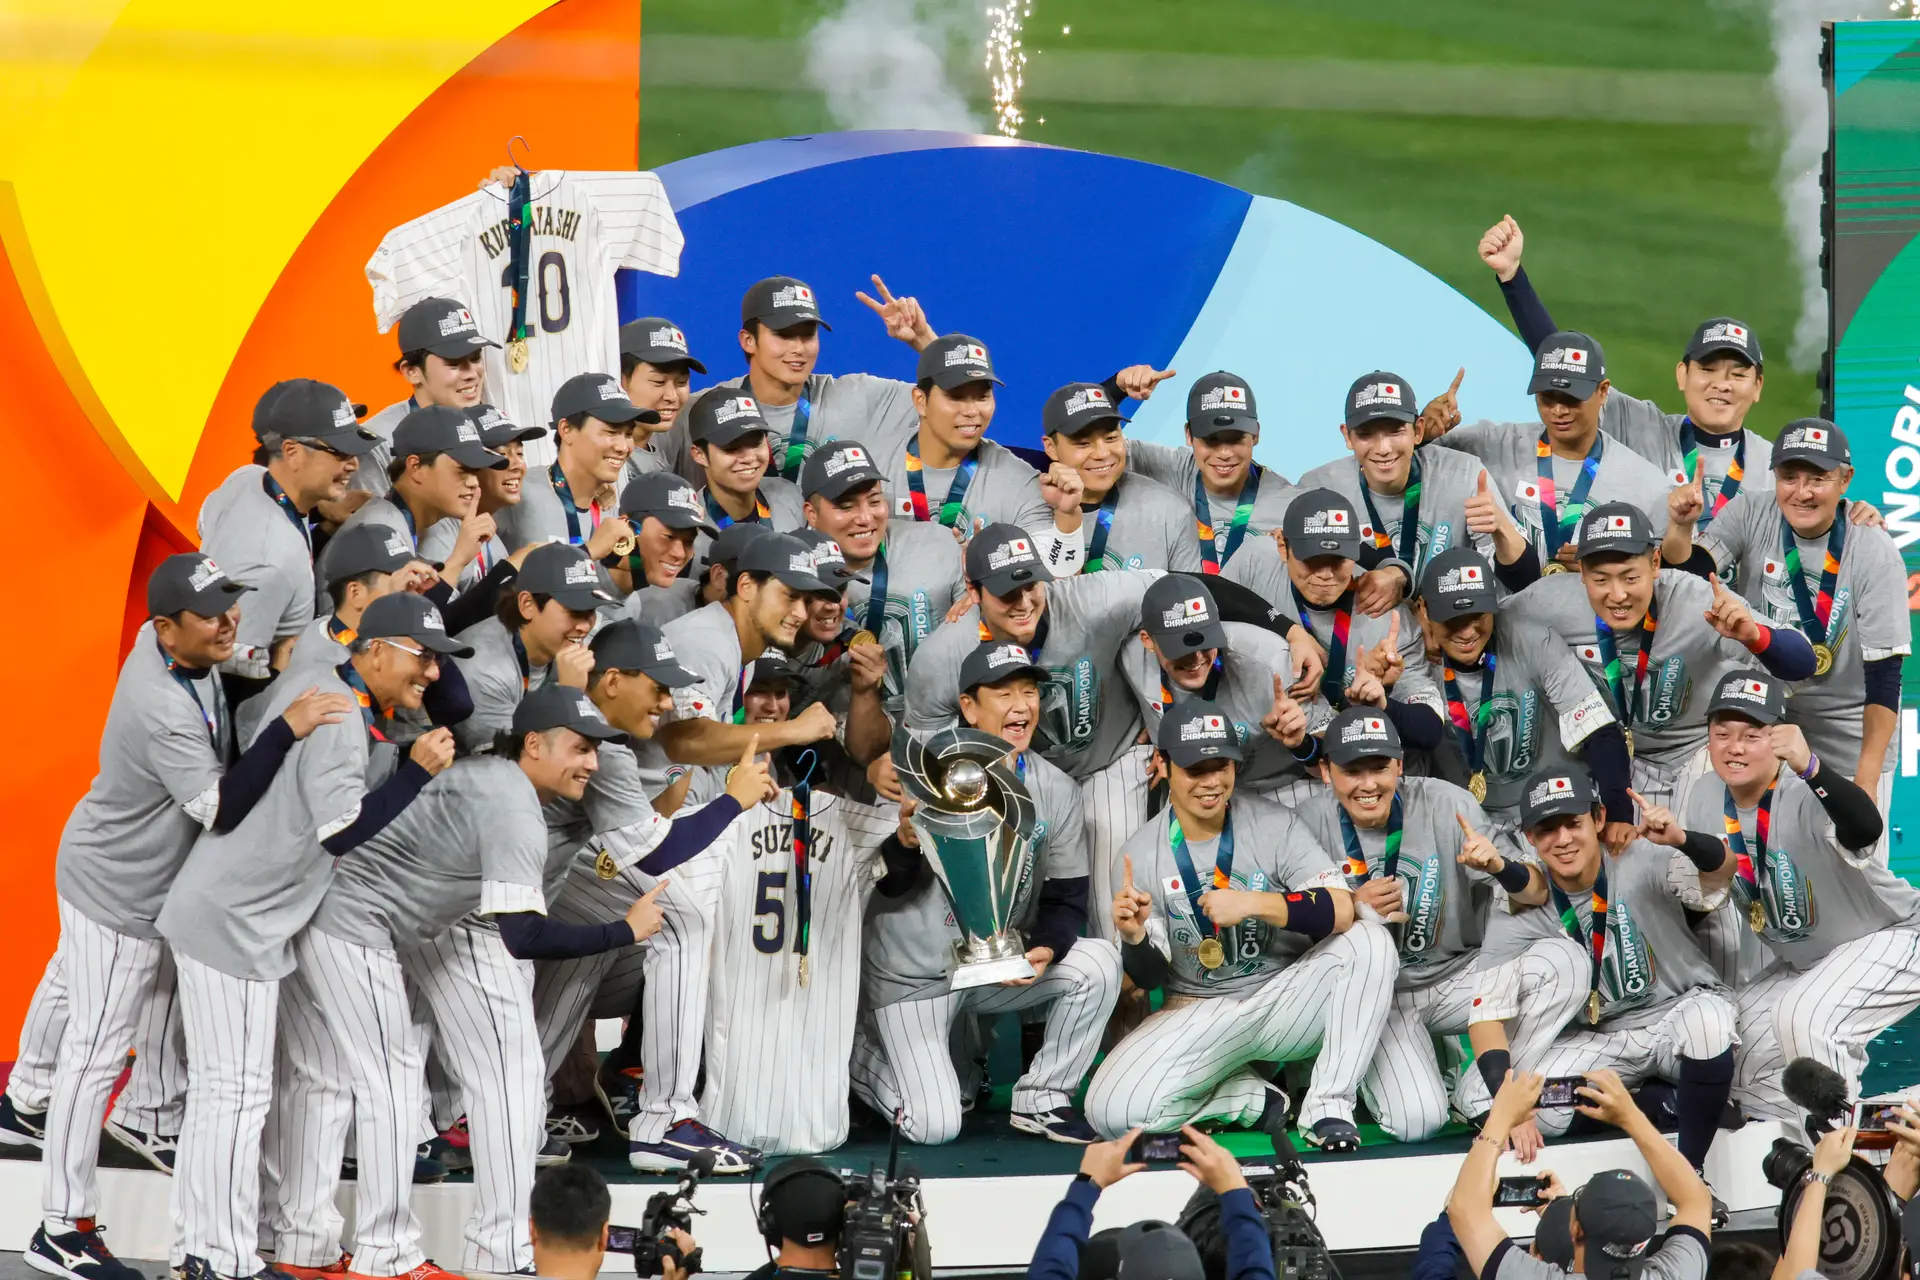 Estrela japonesa é eleito melhor jogador de liga de beisebol dos EUA